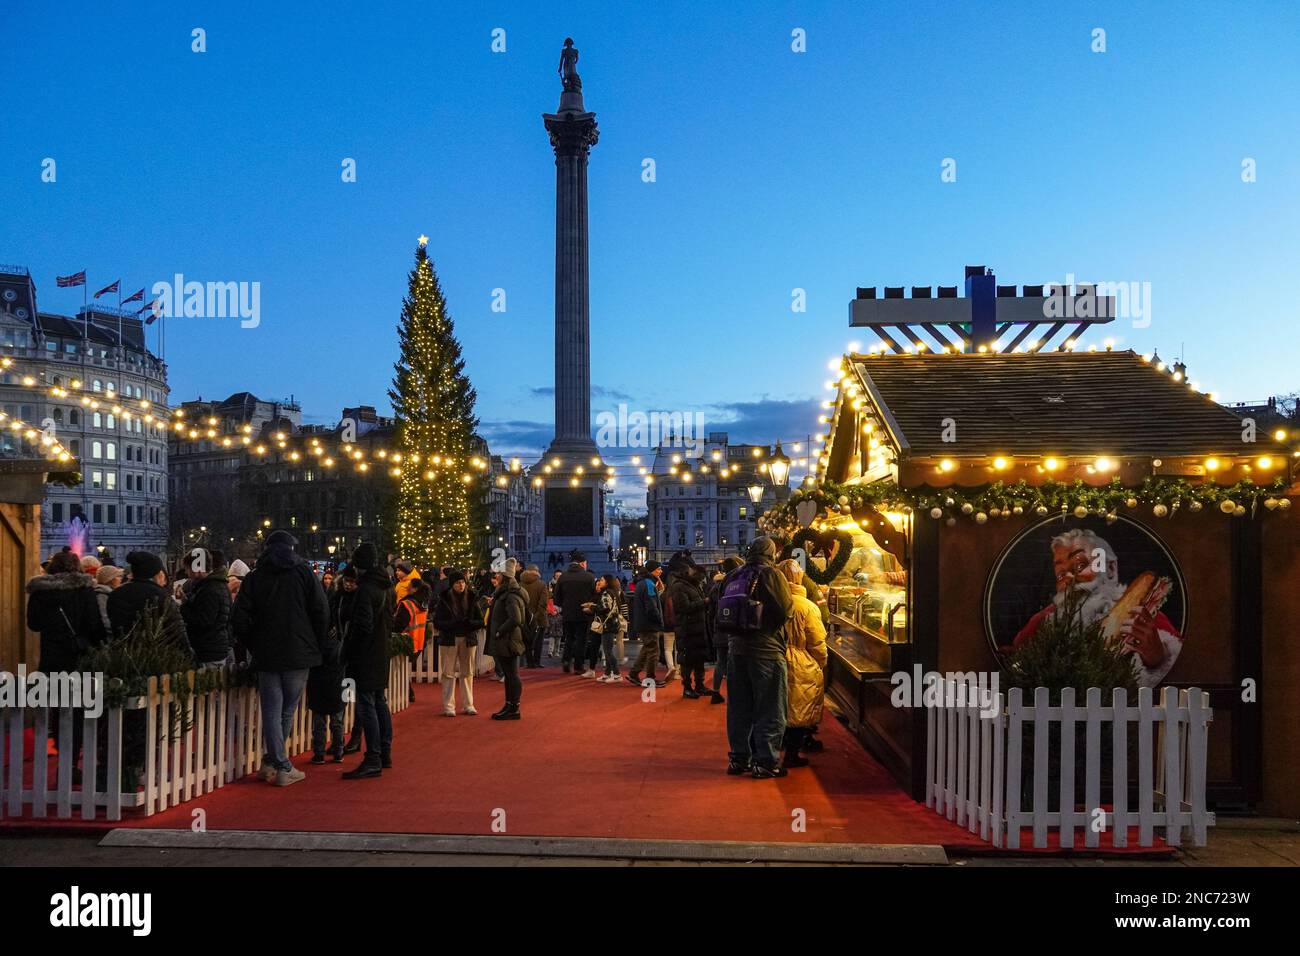 Marché de Noël et arbre de Noël à Trafalgar Square, Londres Angleterre Royaume-Uni Banque D'Images